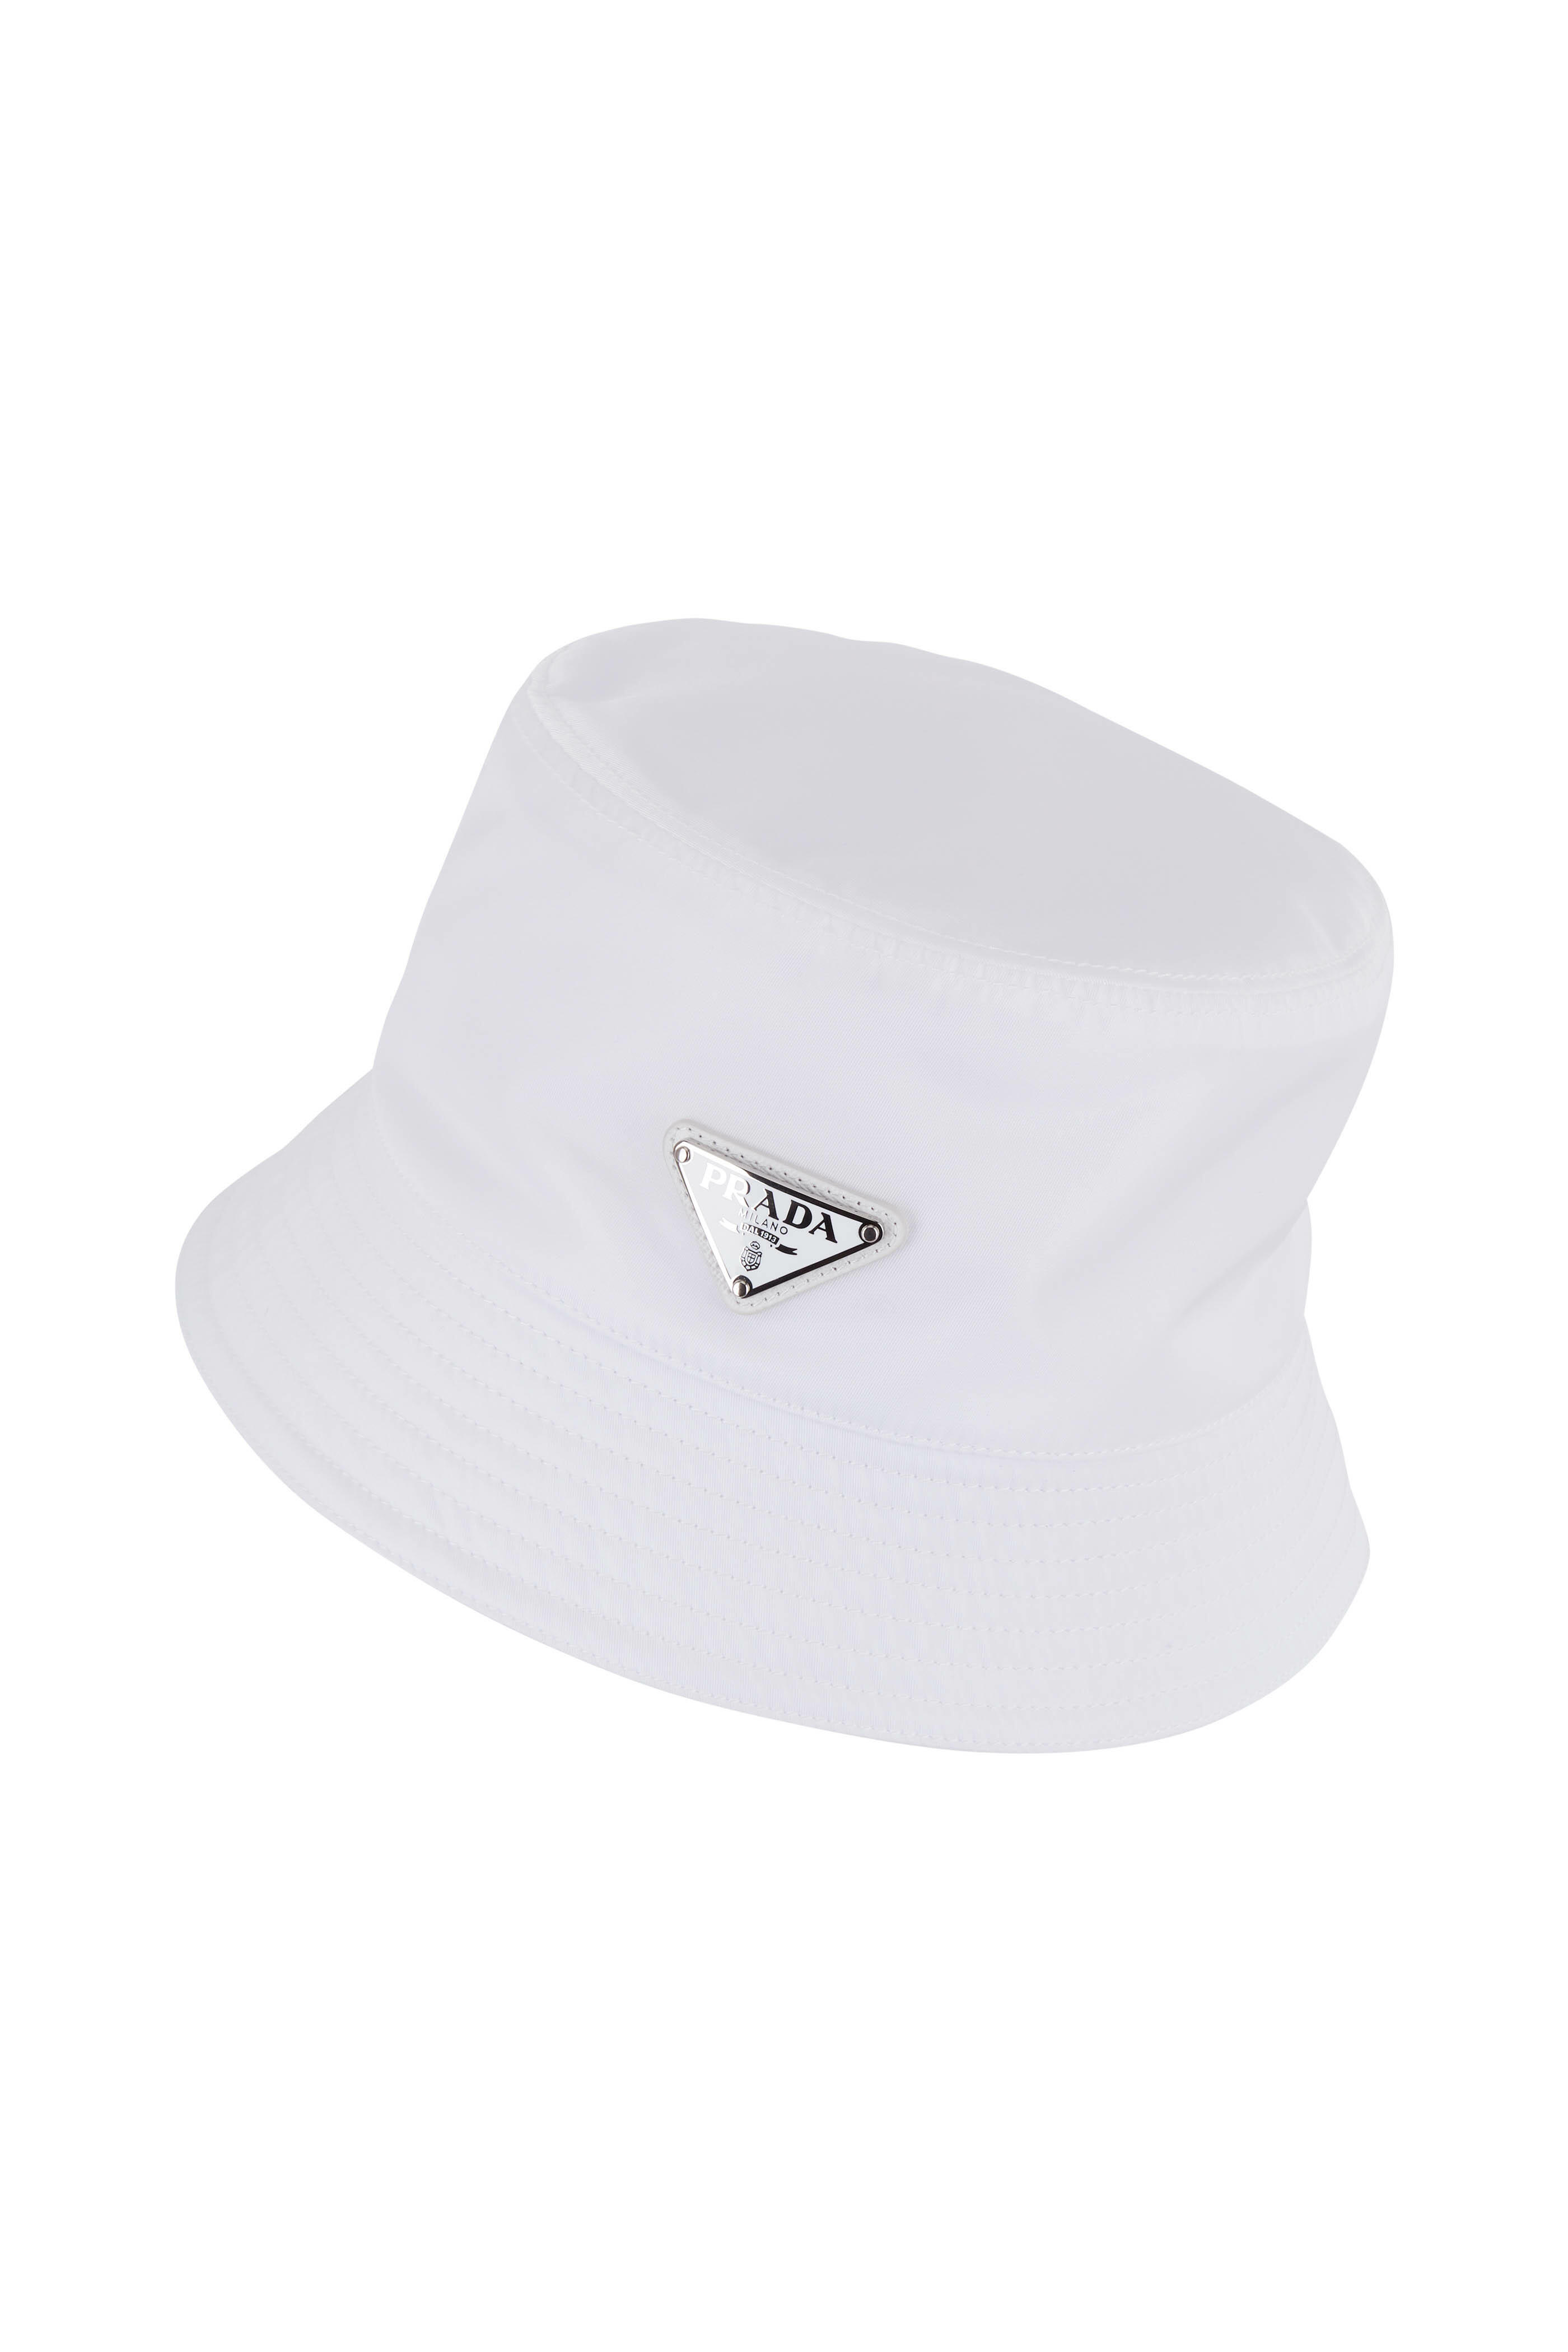 当店在庫してます！ 【新品】PRADA ホワイト バケットハット 帽子 